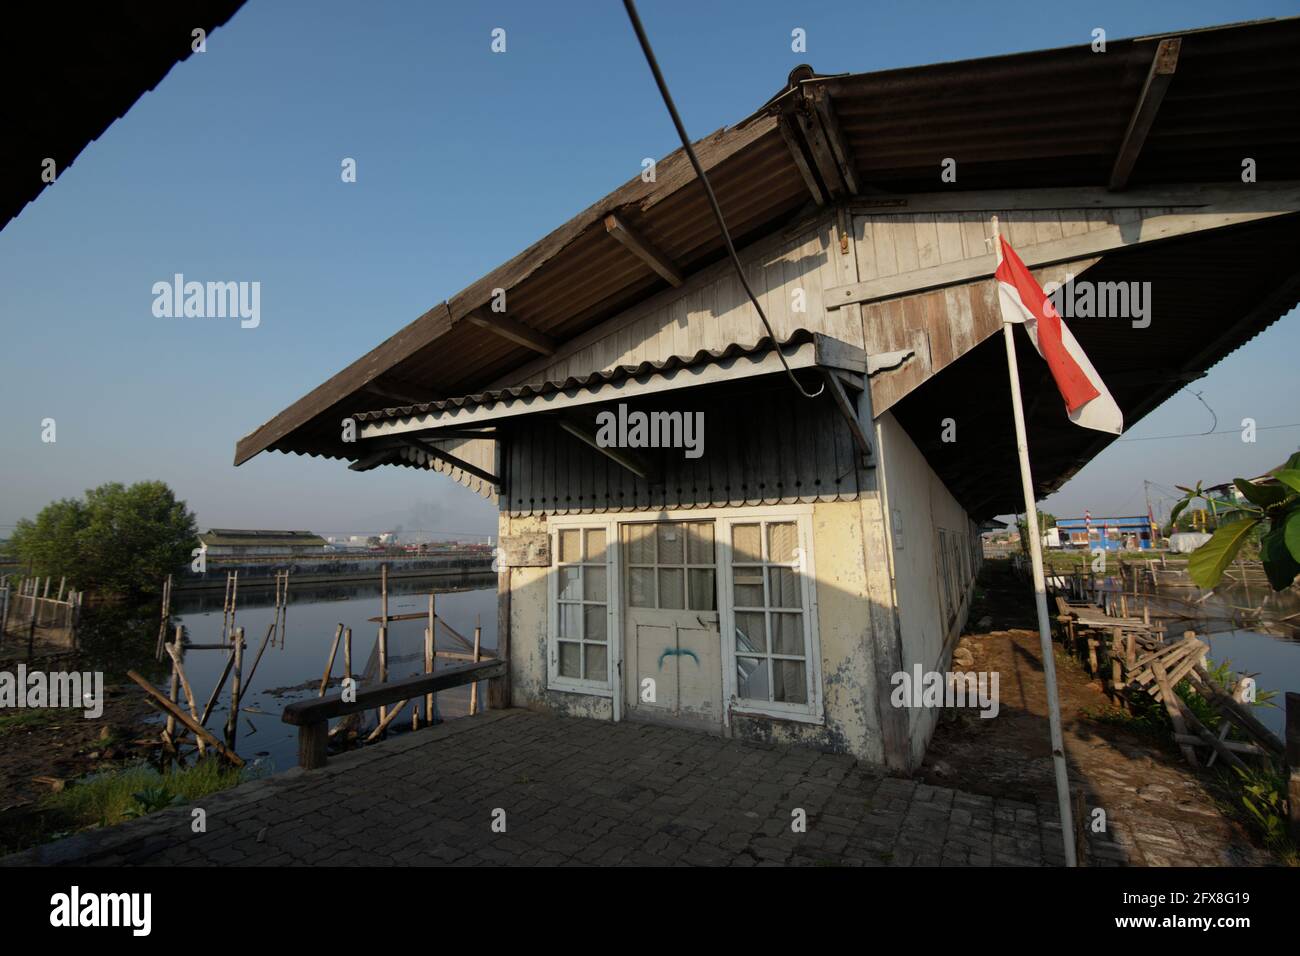 Partie d'une gare abandonnée à Semarang, Central Java, Indonésie. Situé en partie sur la zone côtière avec un certain nombre de canaux et de rivière, Semarang a souffert de l'affaissement des terres et des inondations côtières. Banque D'Images